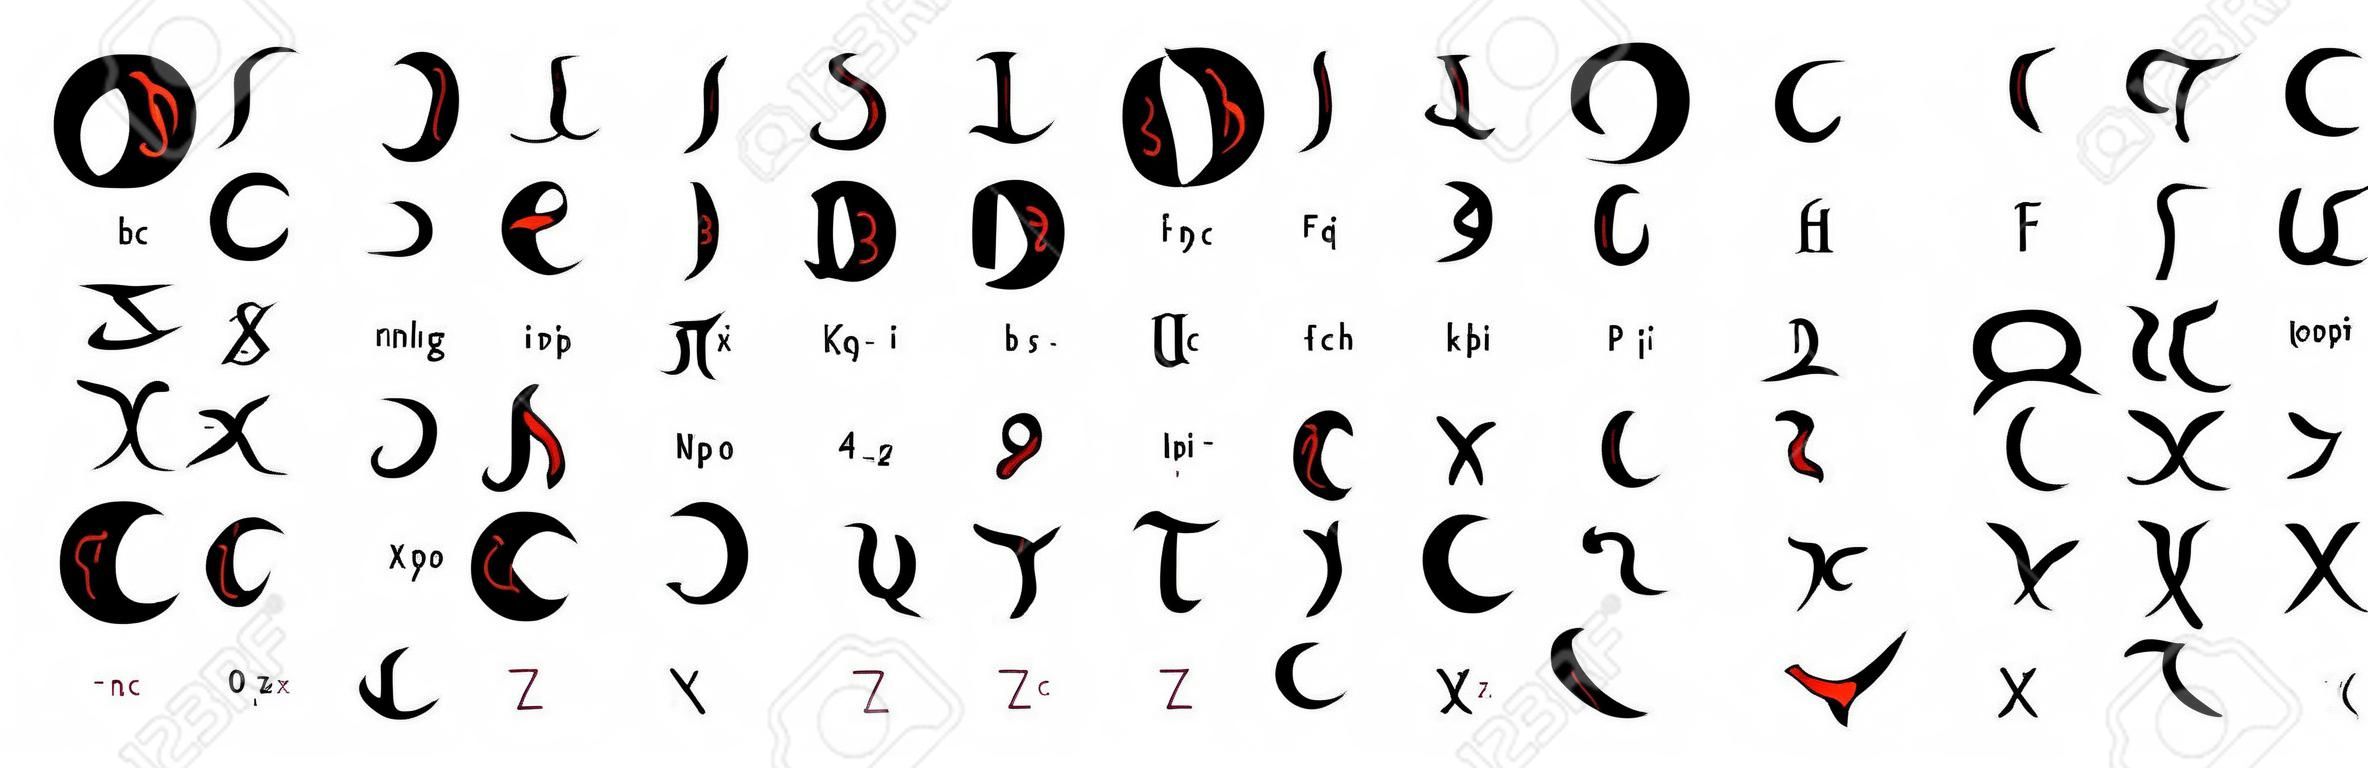 Ensemble d'alphabet magique enochian dessiné à la main